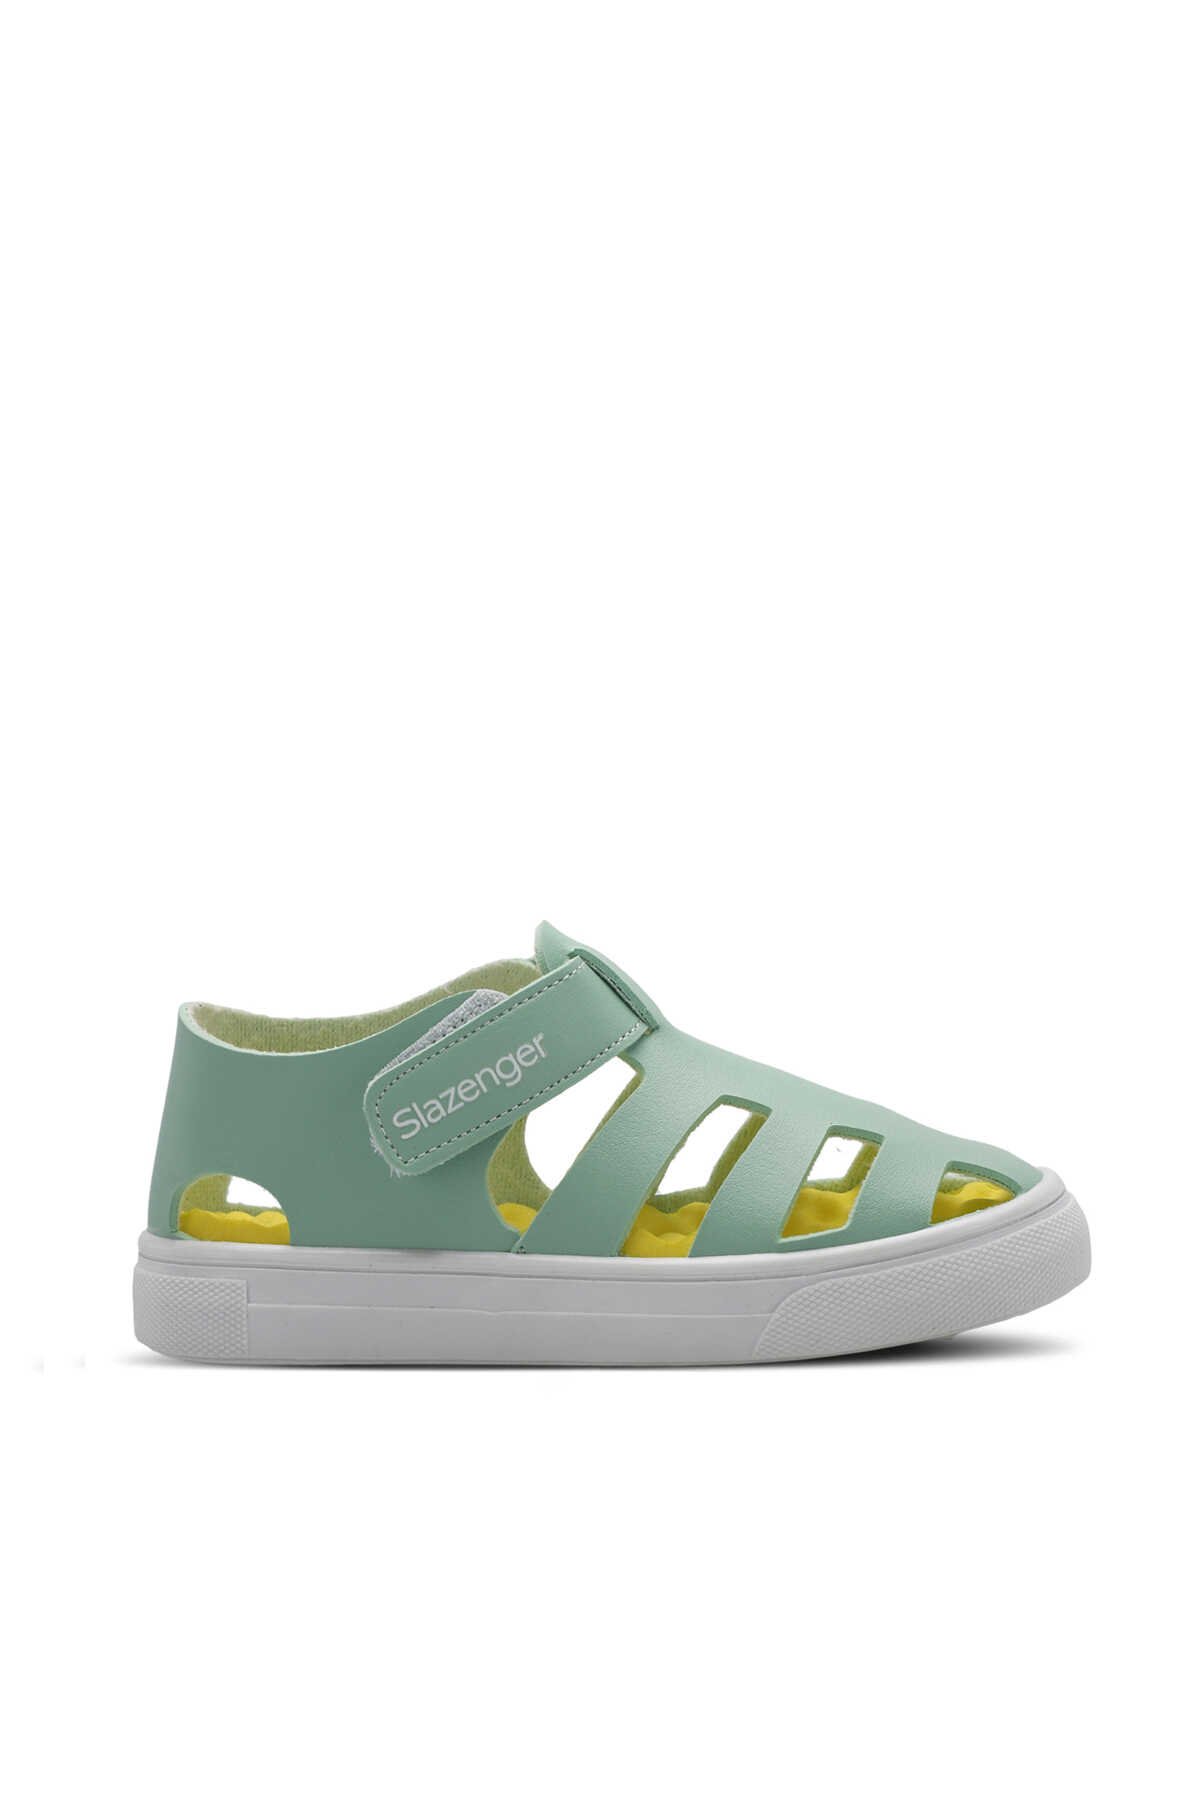 Slazenger - Slazenger KRYSTAL Unisex Çocuk Sneaker Ayakkabı Yeşil